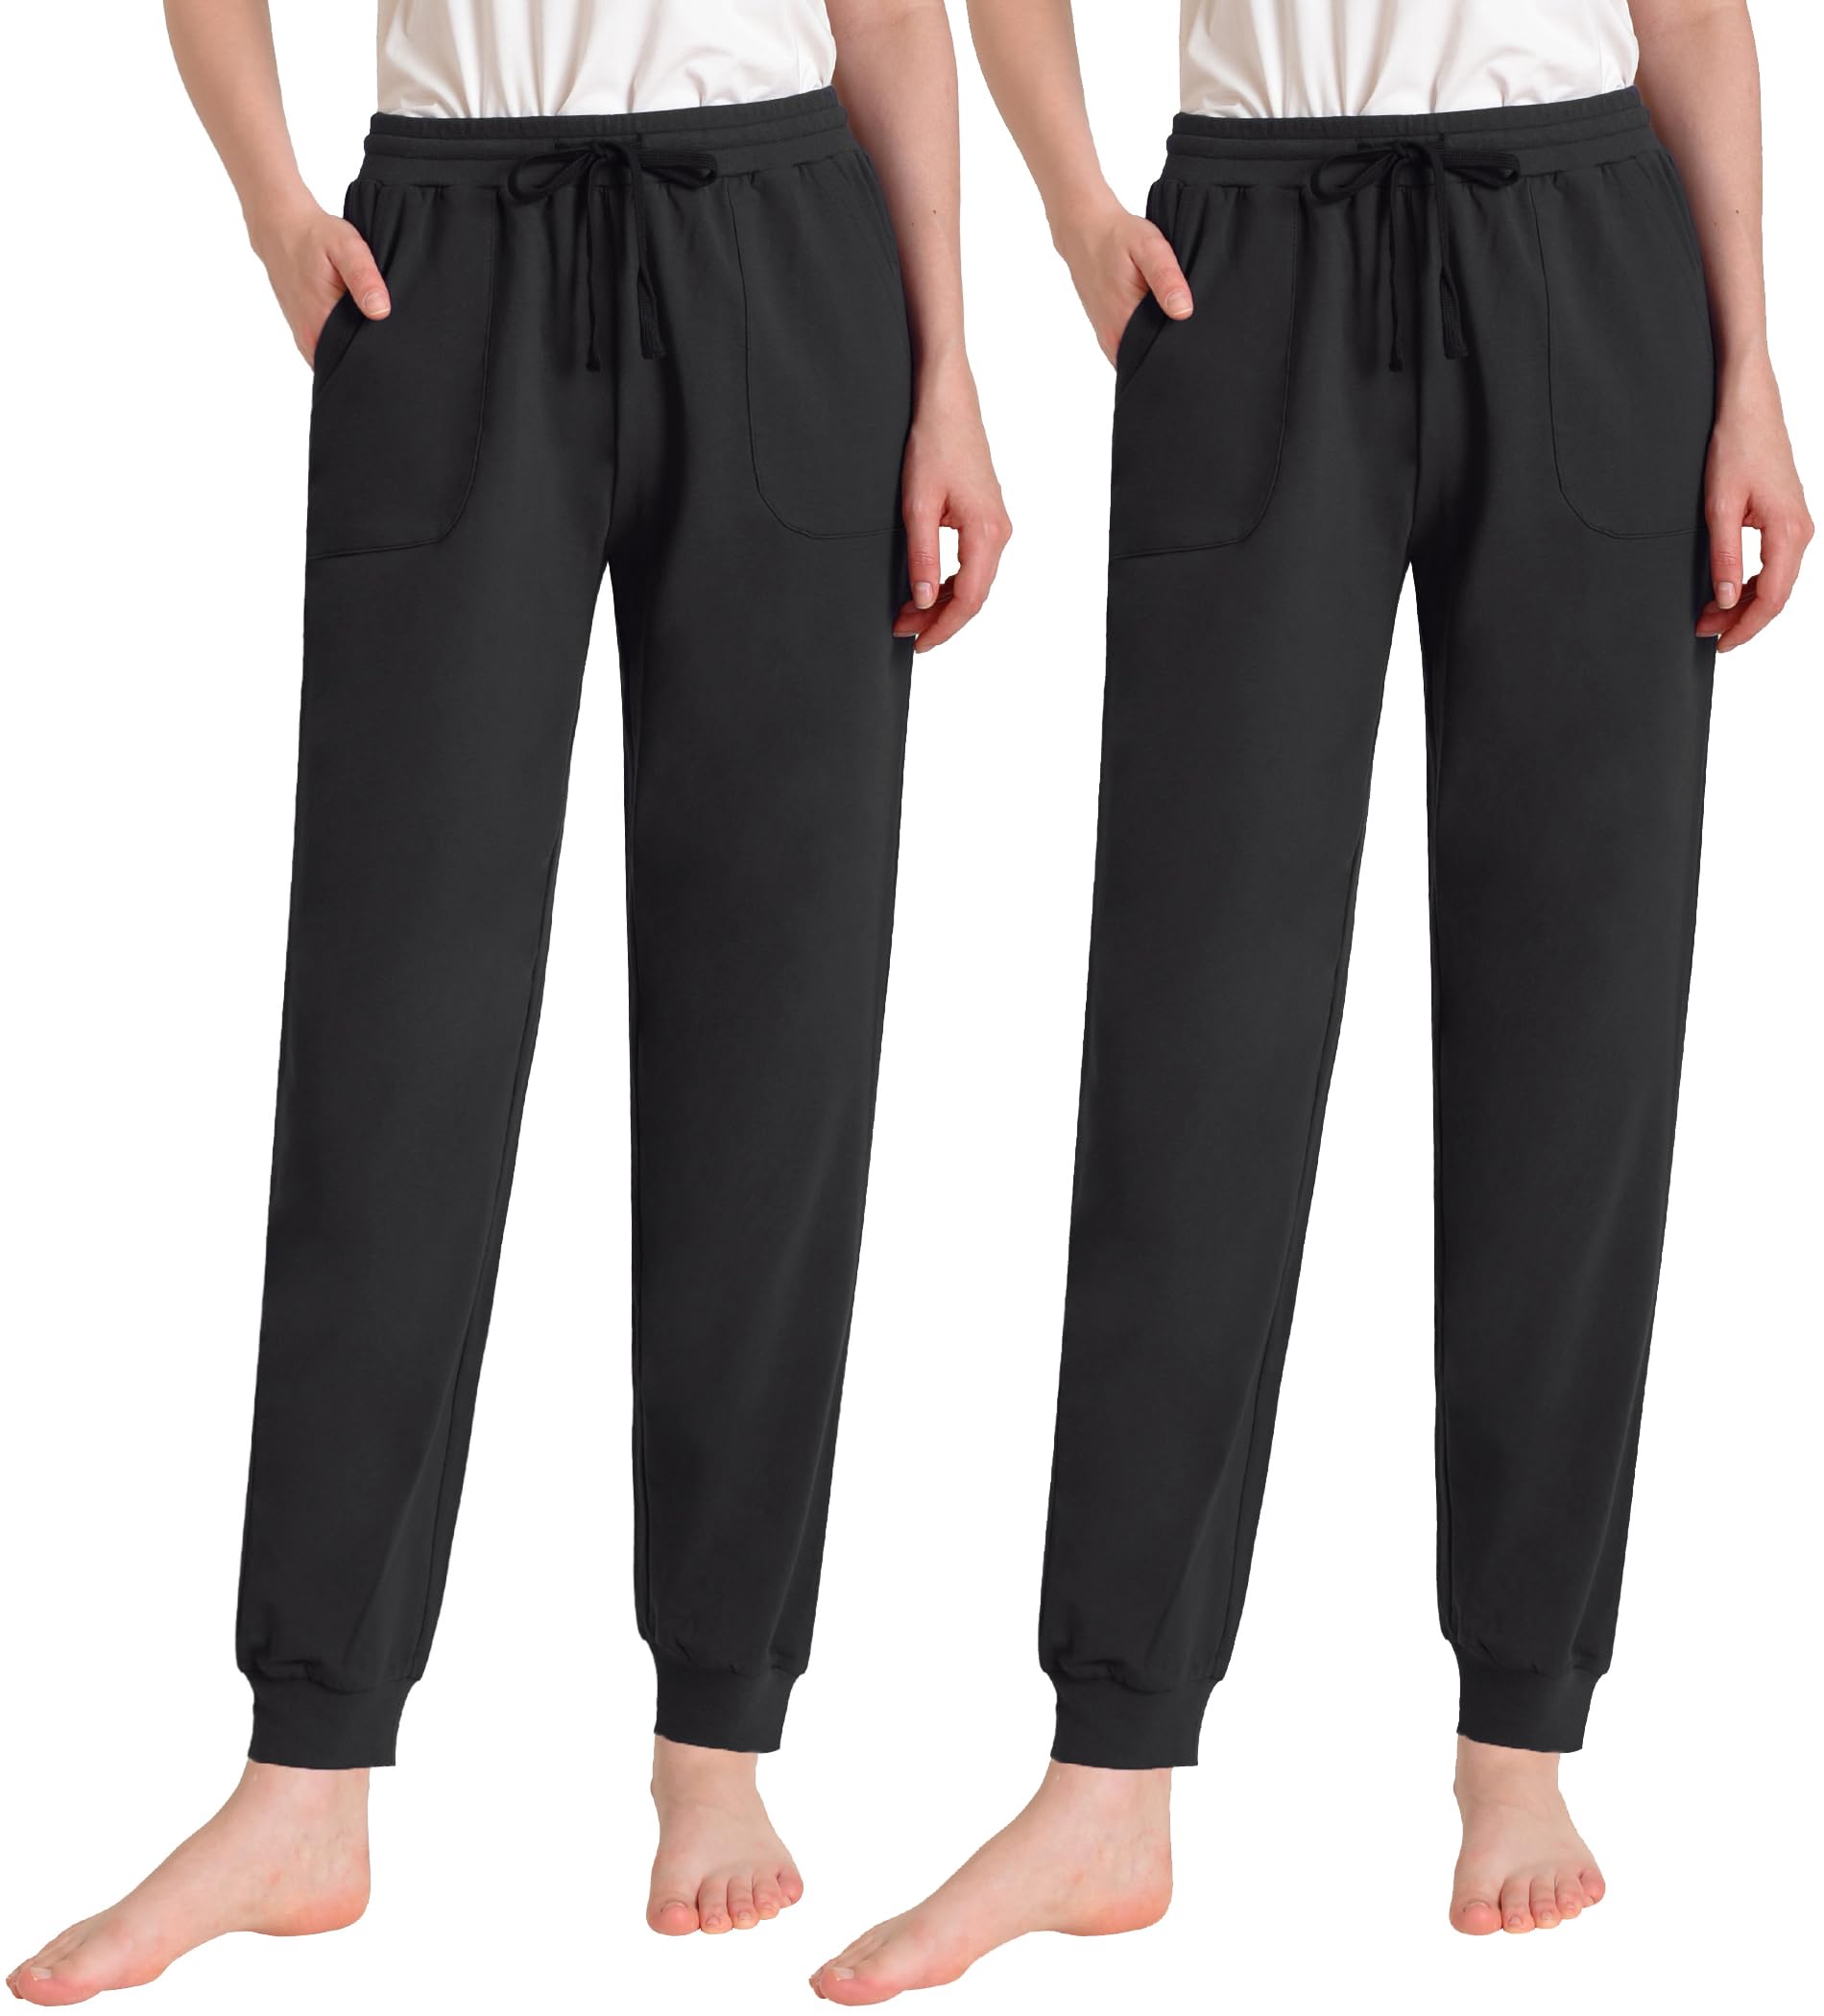 Women's Lounge Pants with Pockets Comfy Cotton PJ Bottoms – Latuza